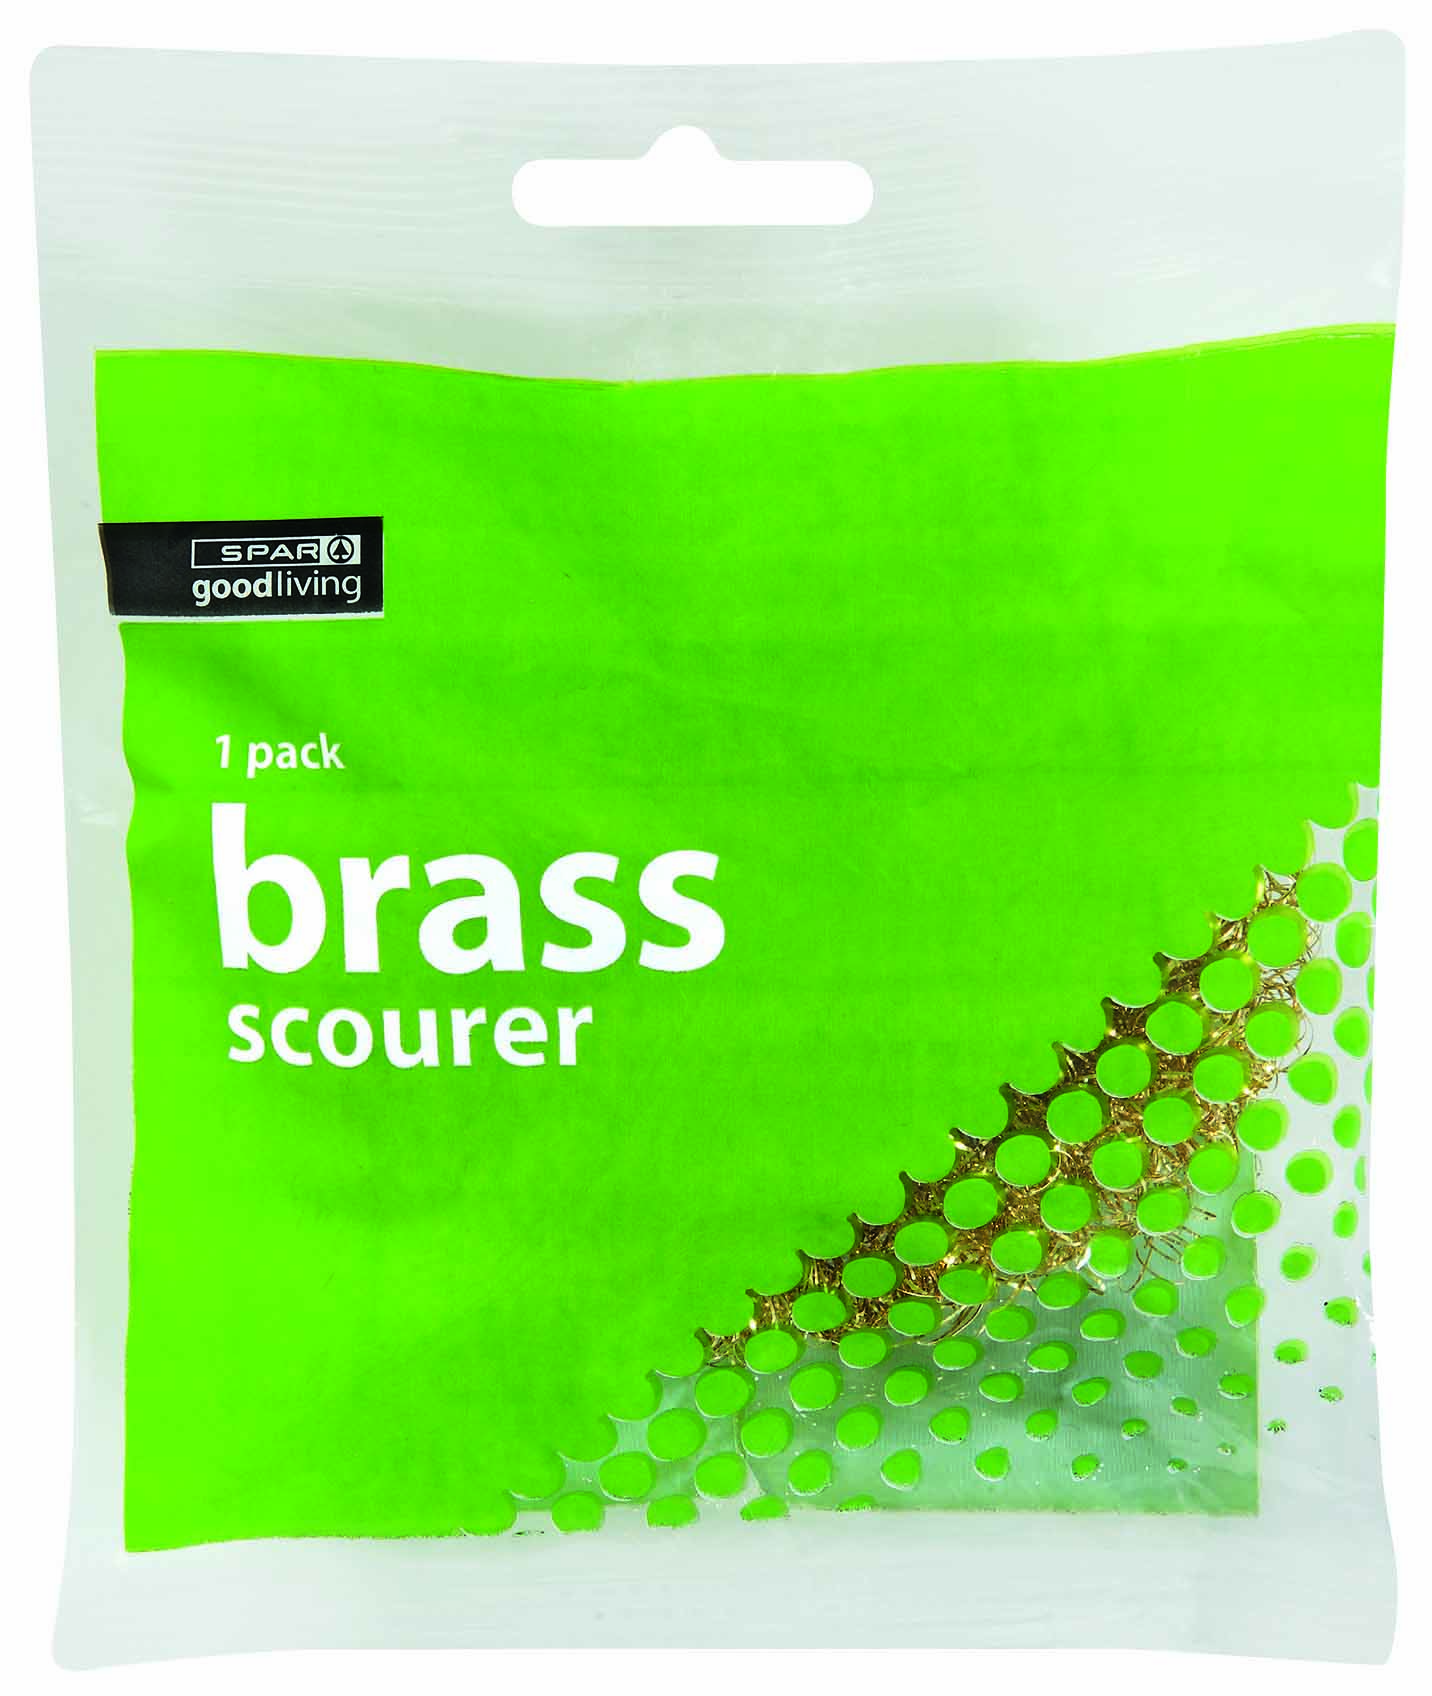 scourer brass - 1 pack